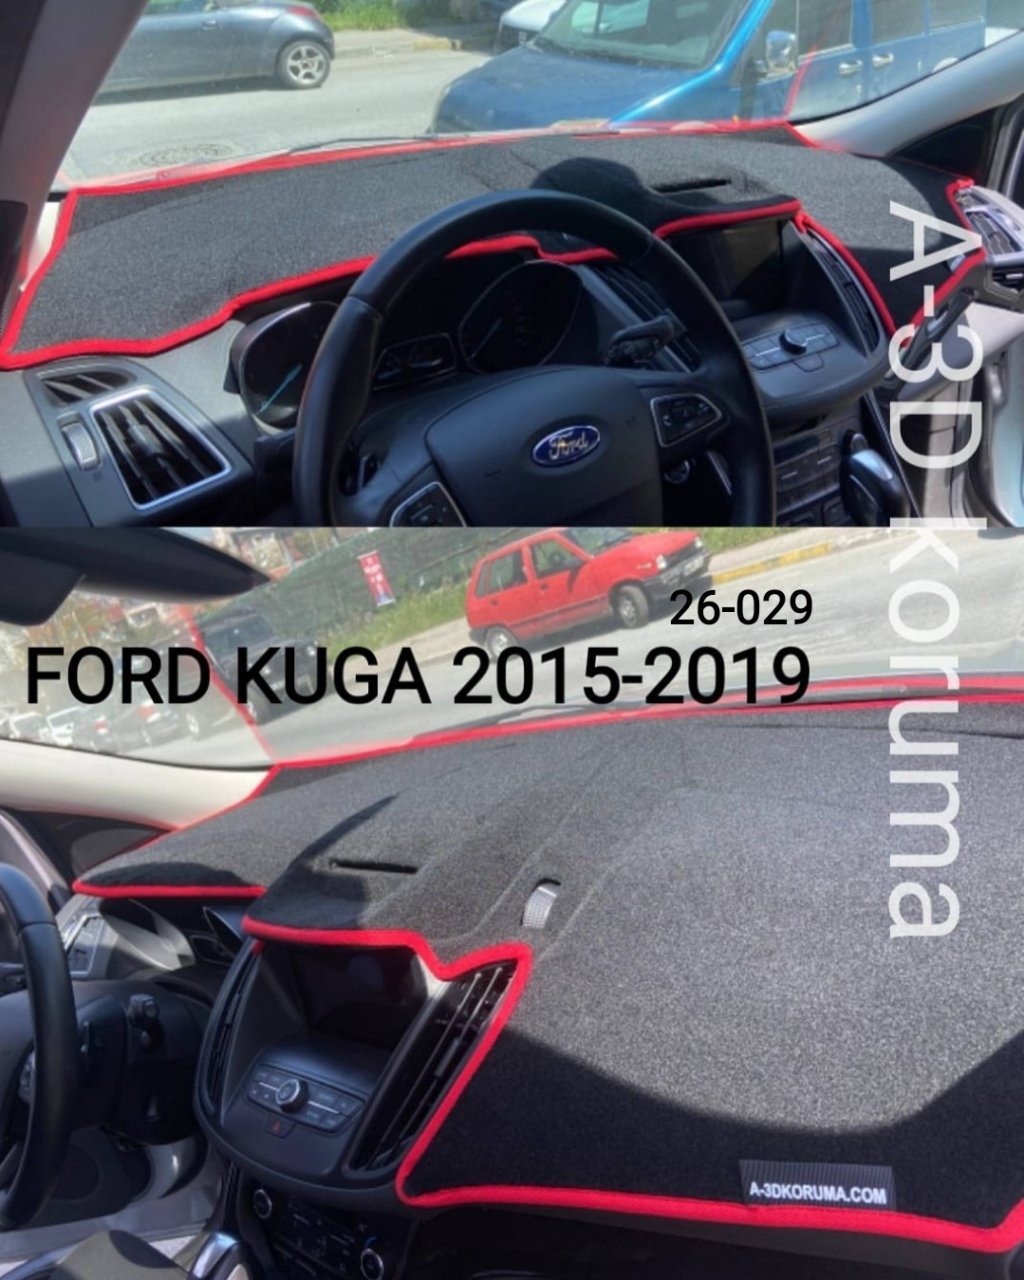 FORD KUGA 2015-2019